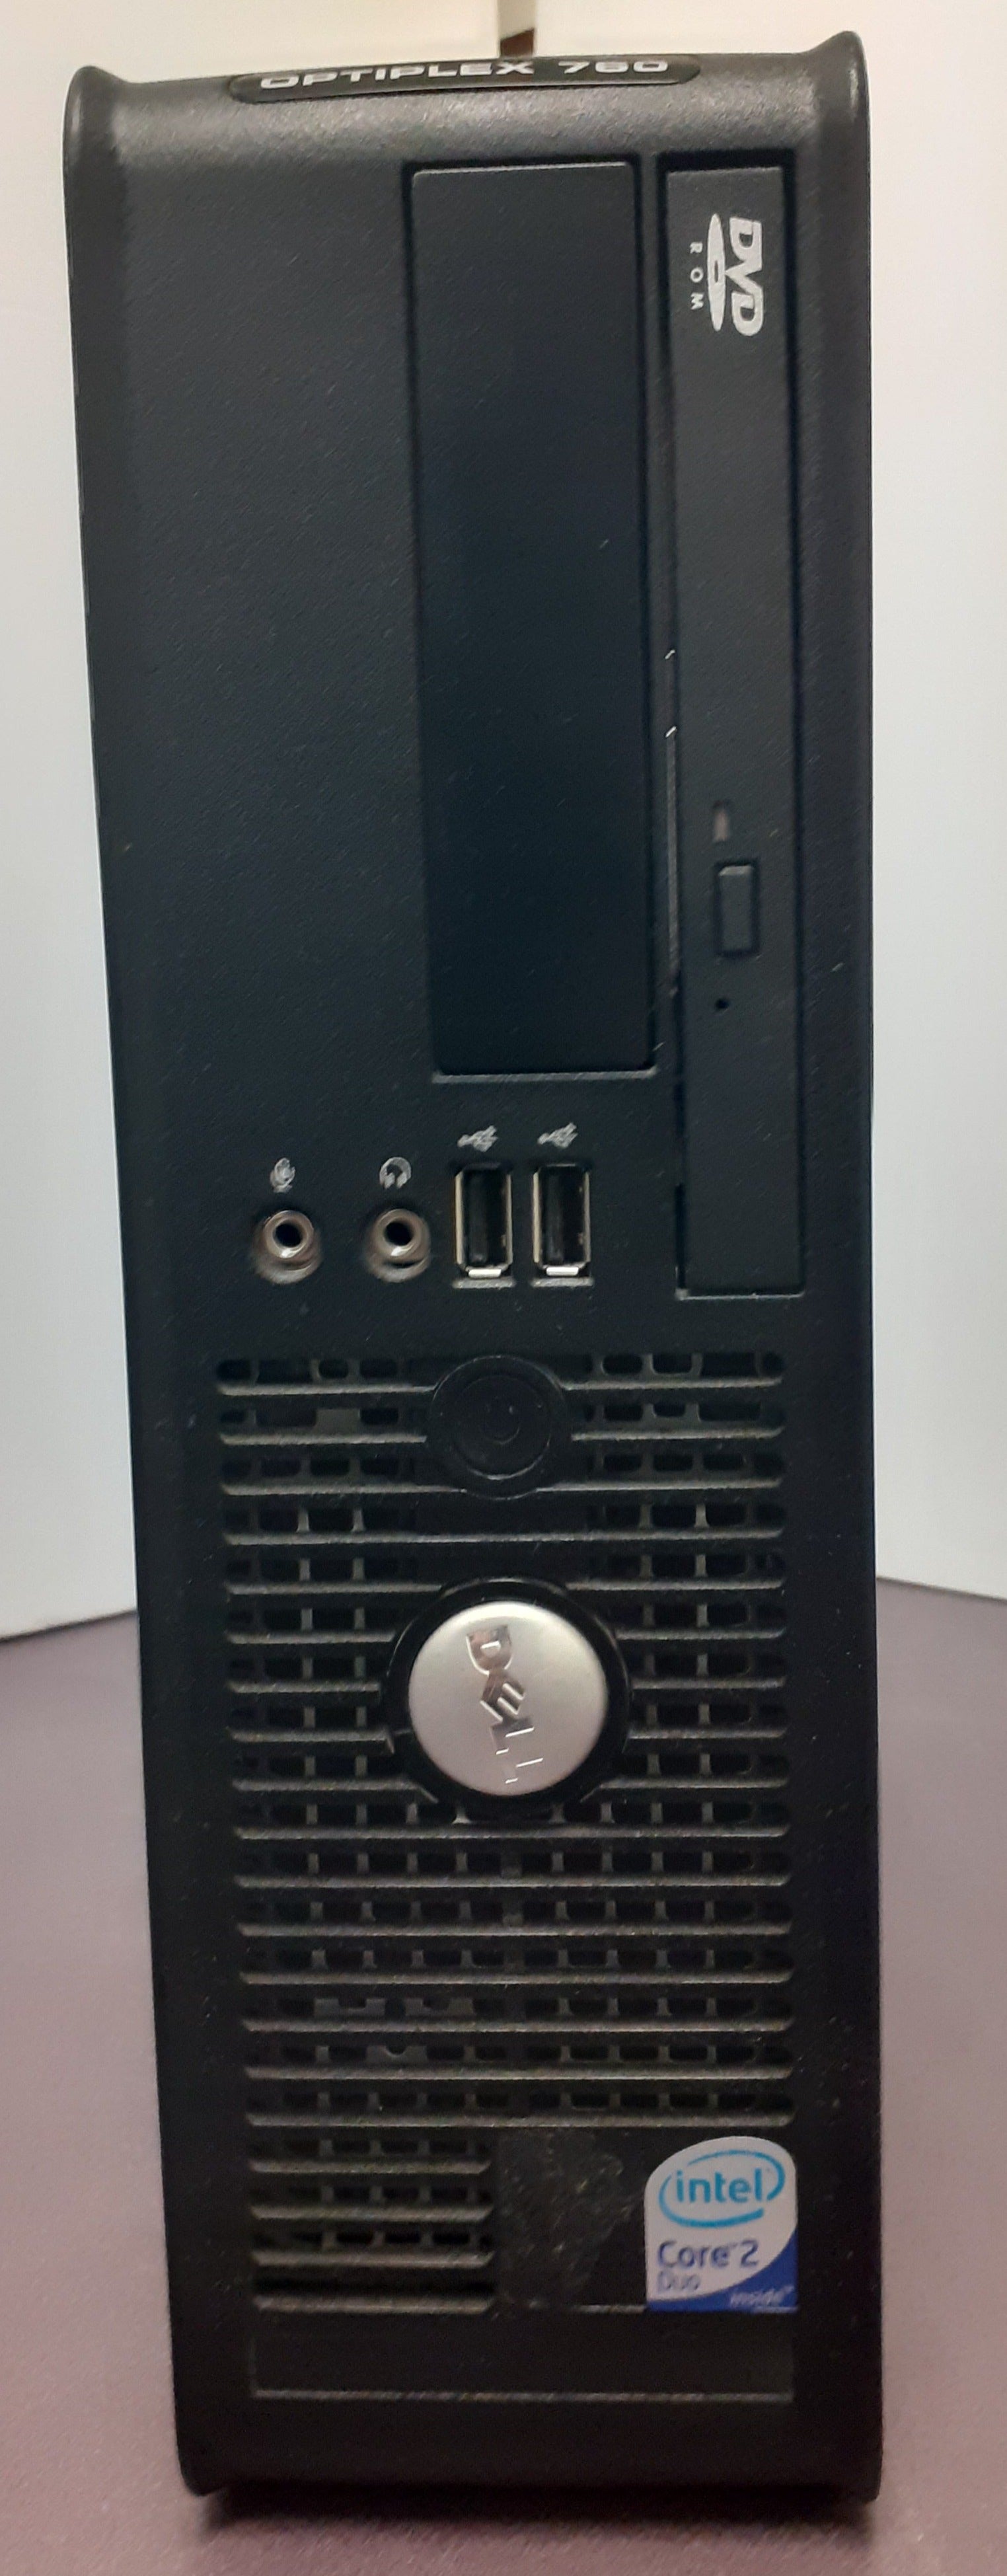 Refurbished PC - Dell / Intel Dual Core E8600